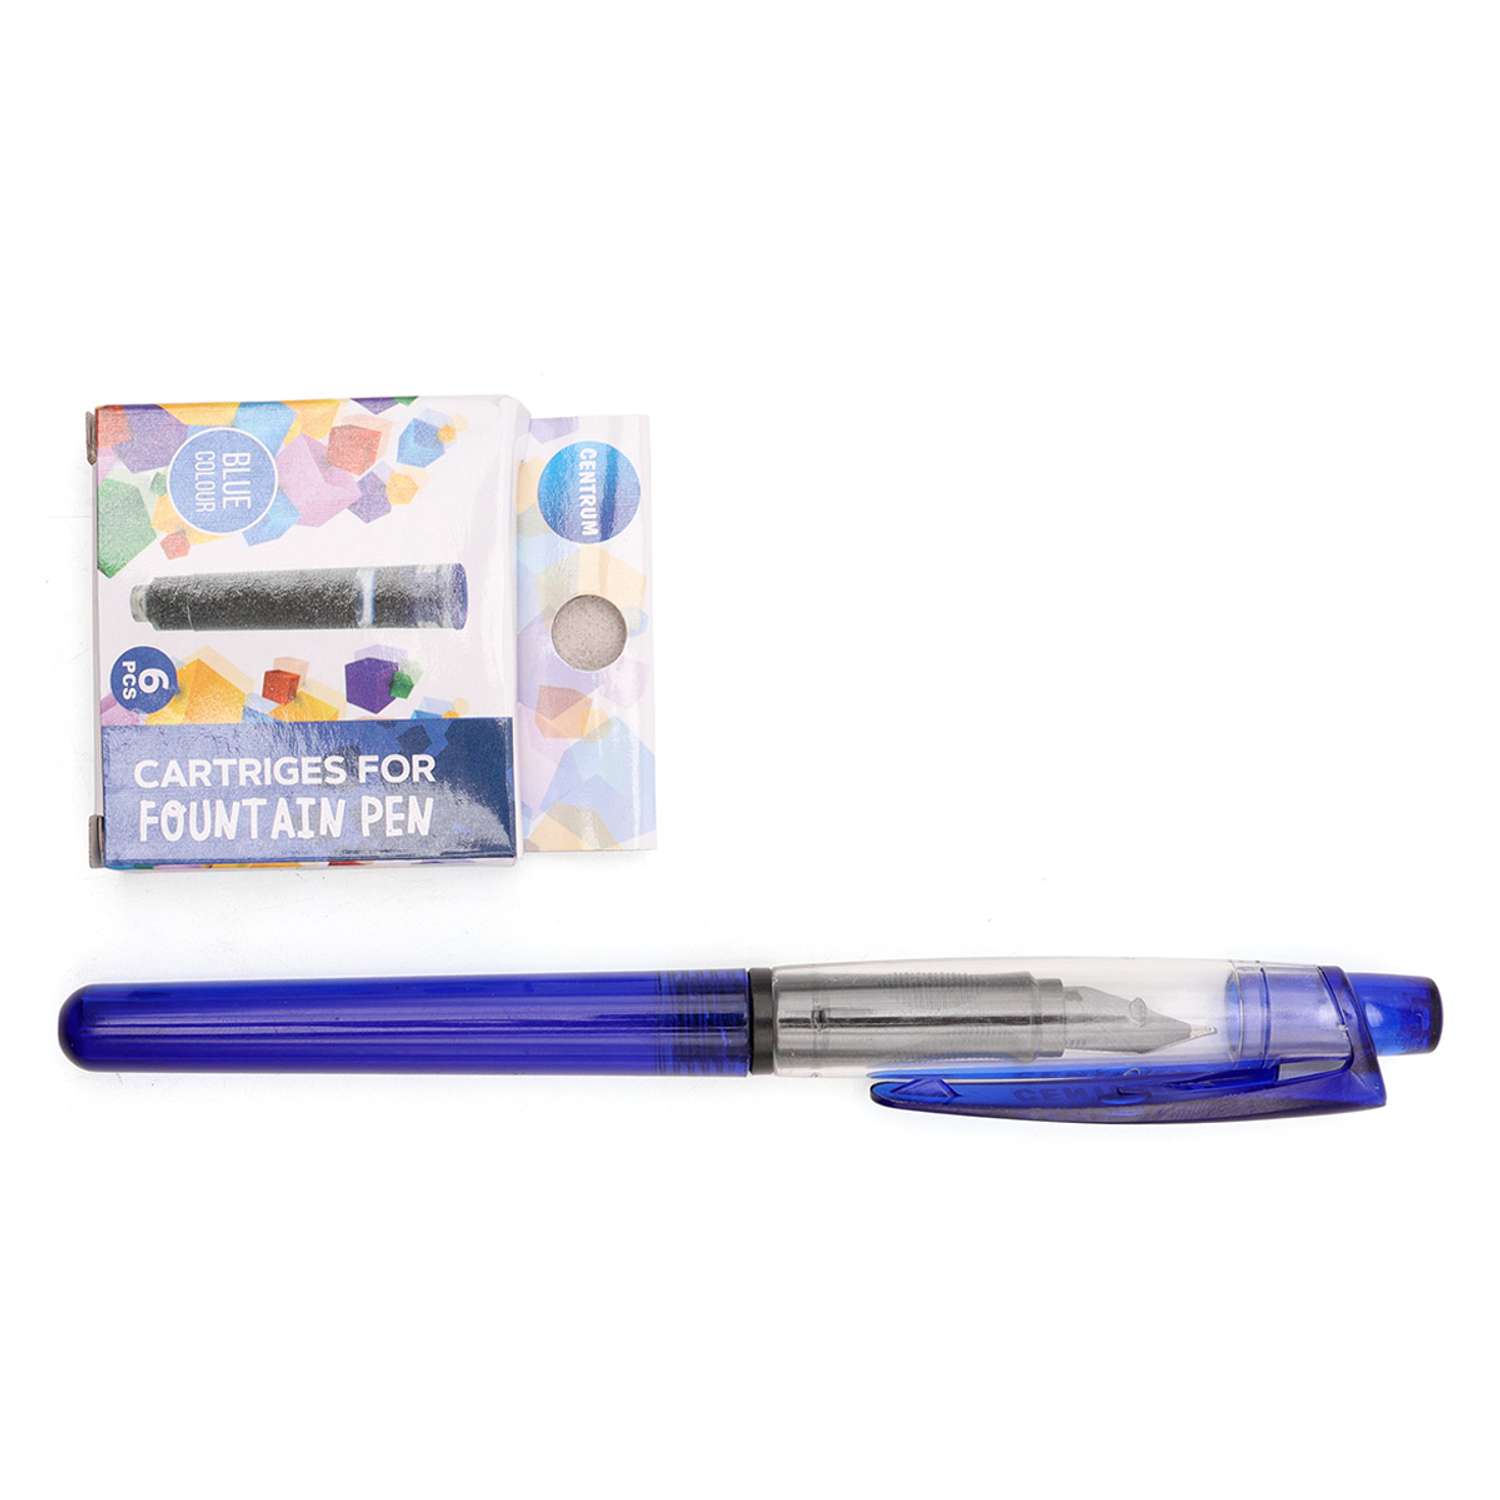 Ручка перьевая CENTRUM для каллиграфии письма и рисования со сменными картриджами 6 шт ассорти - фото 1